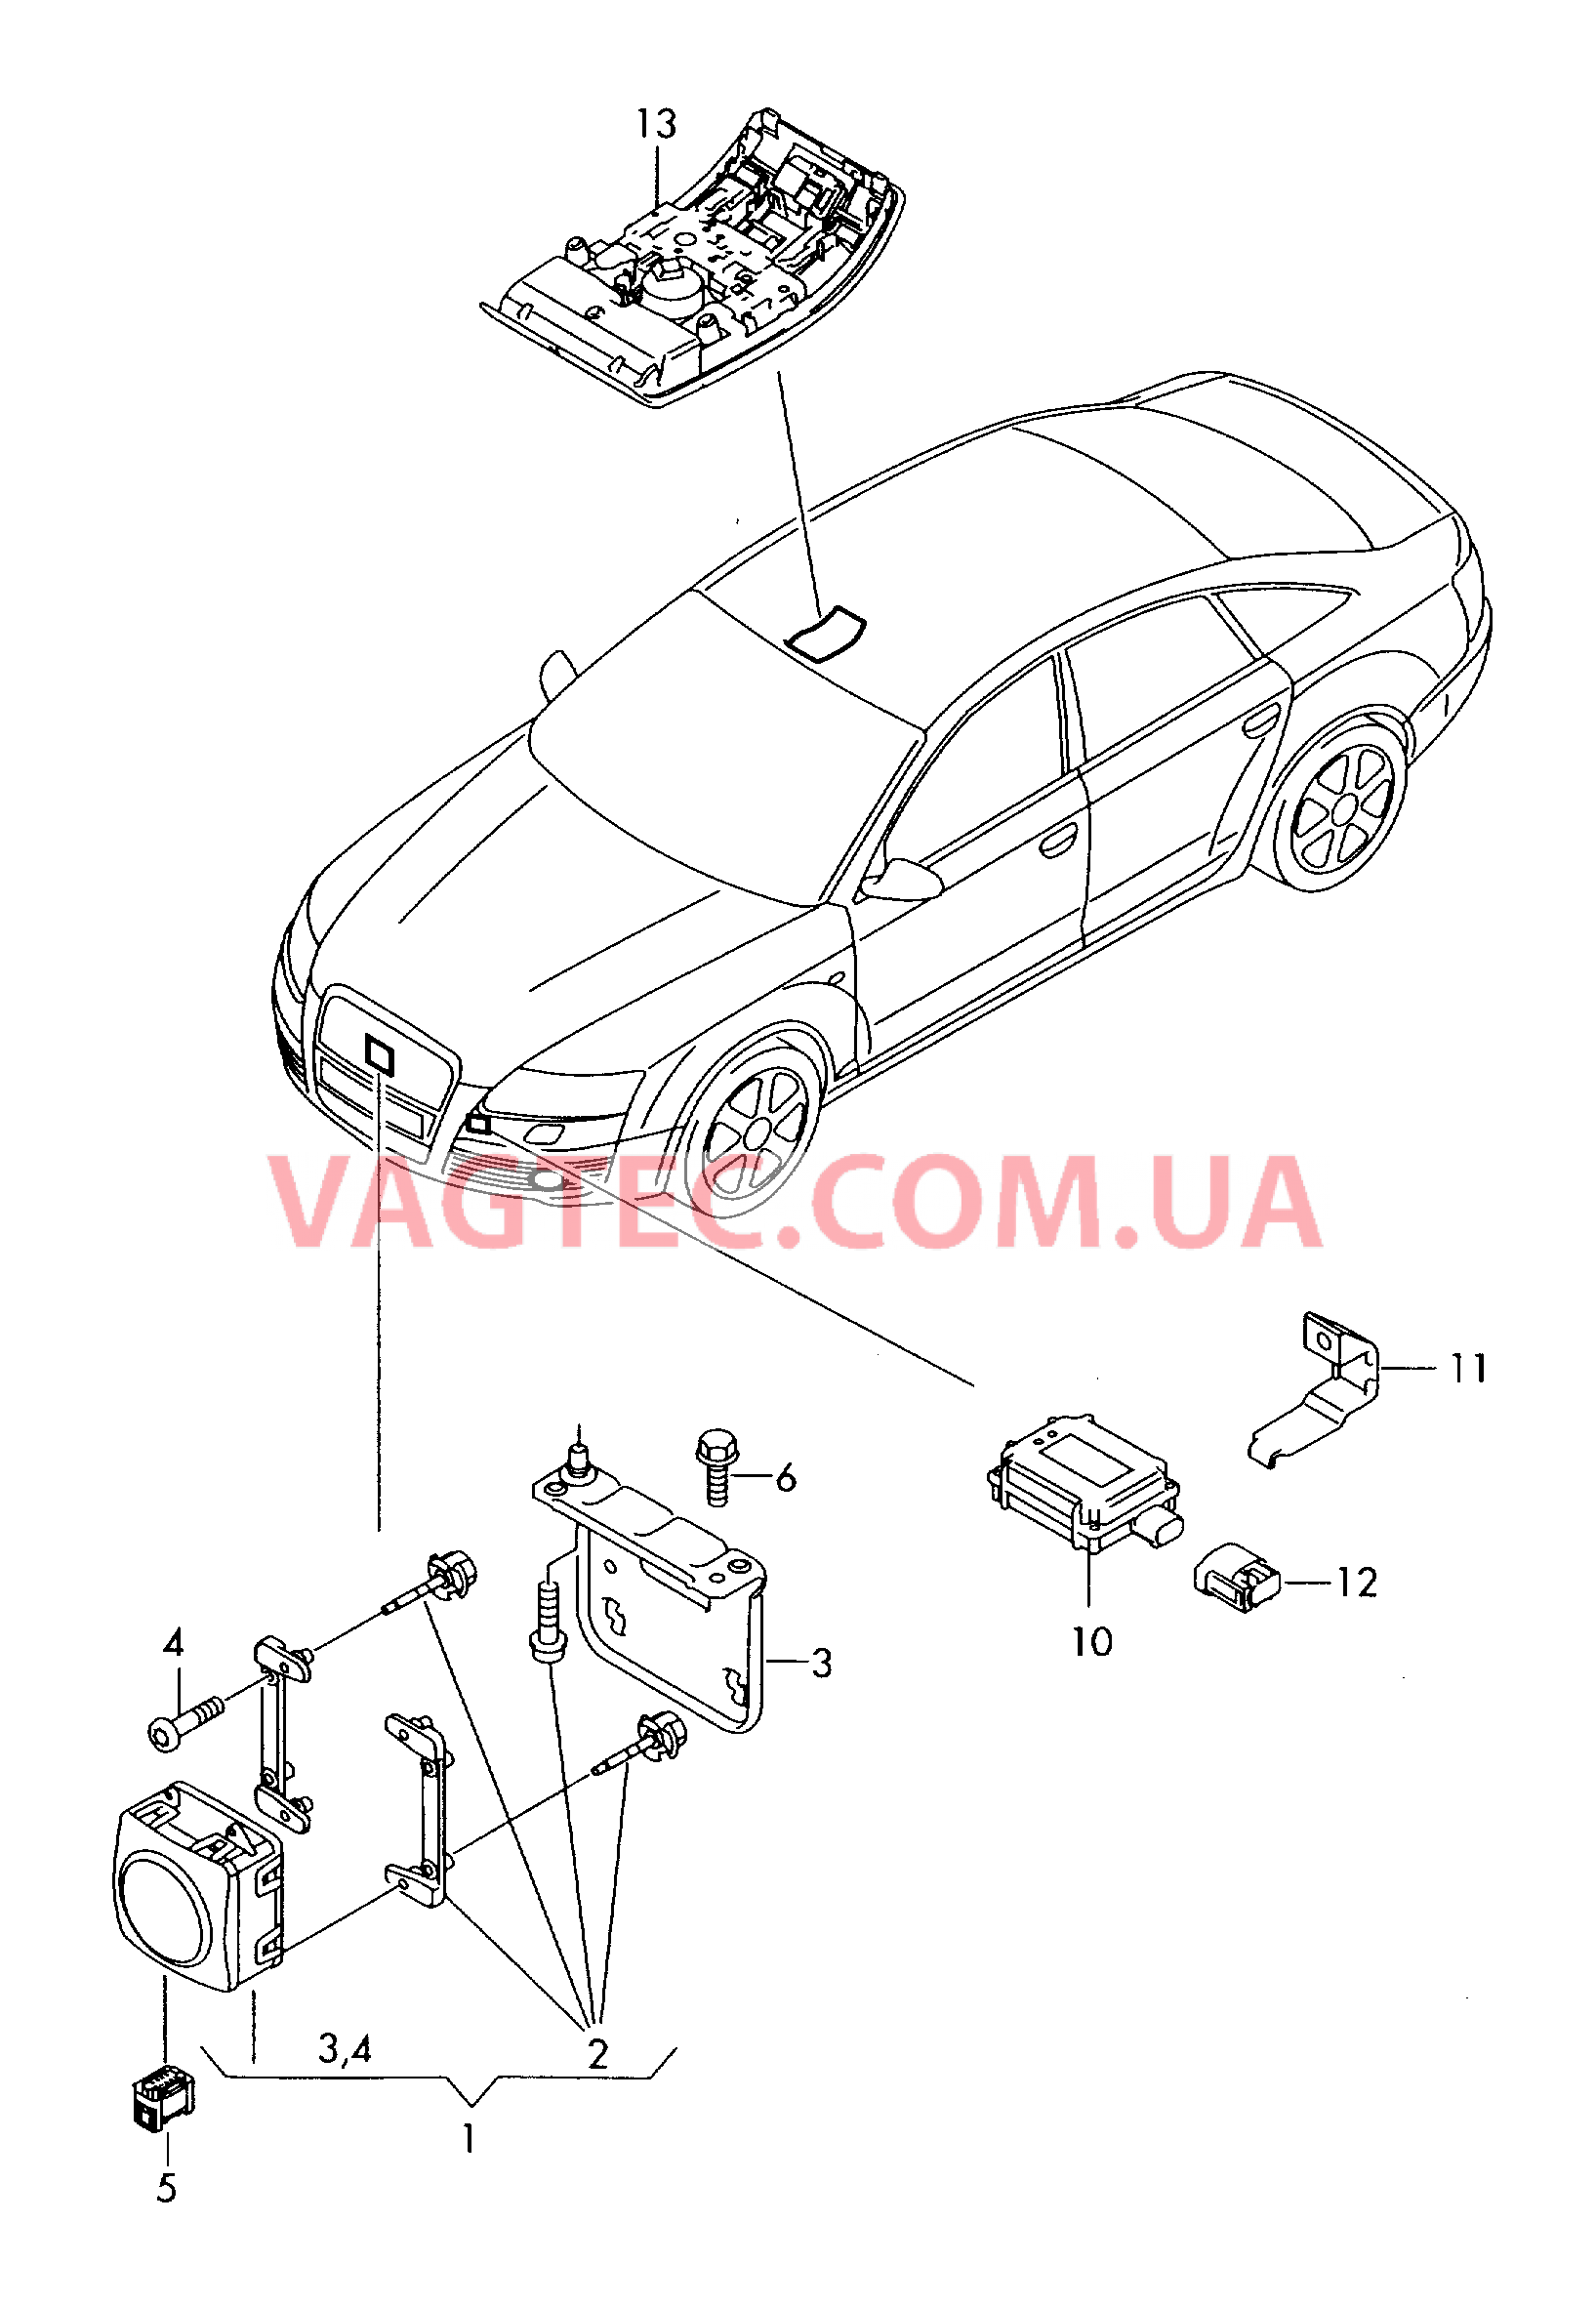 Радарный датчик для автомобилей, оборудованнных круиз-контролем и автоматич. регулятором дистанции  для AUDI A6 2009